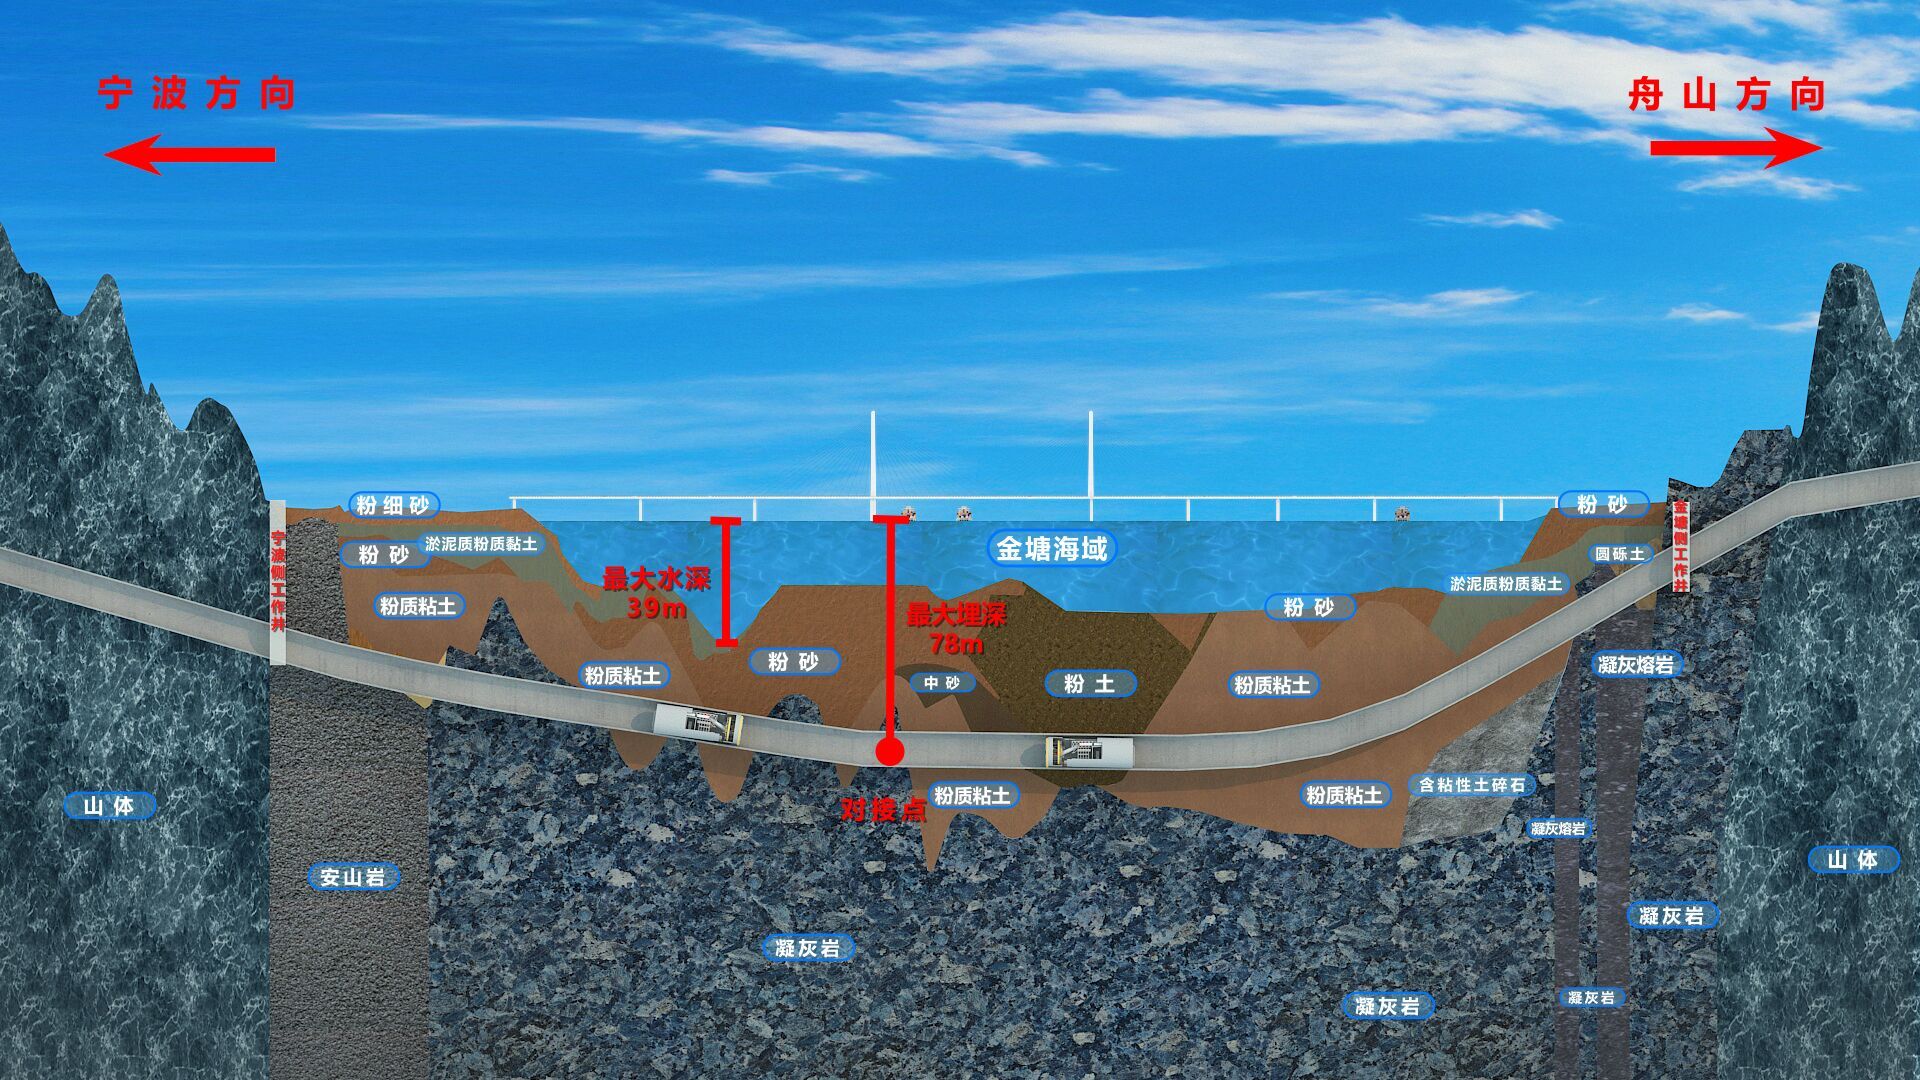 世界最长海底高铁隧道 甬舟铁路金塘海底隧道进入实体施工阶段